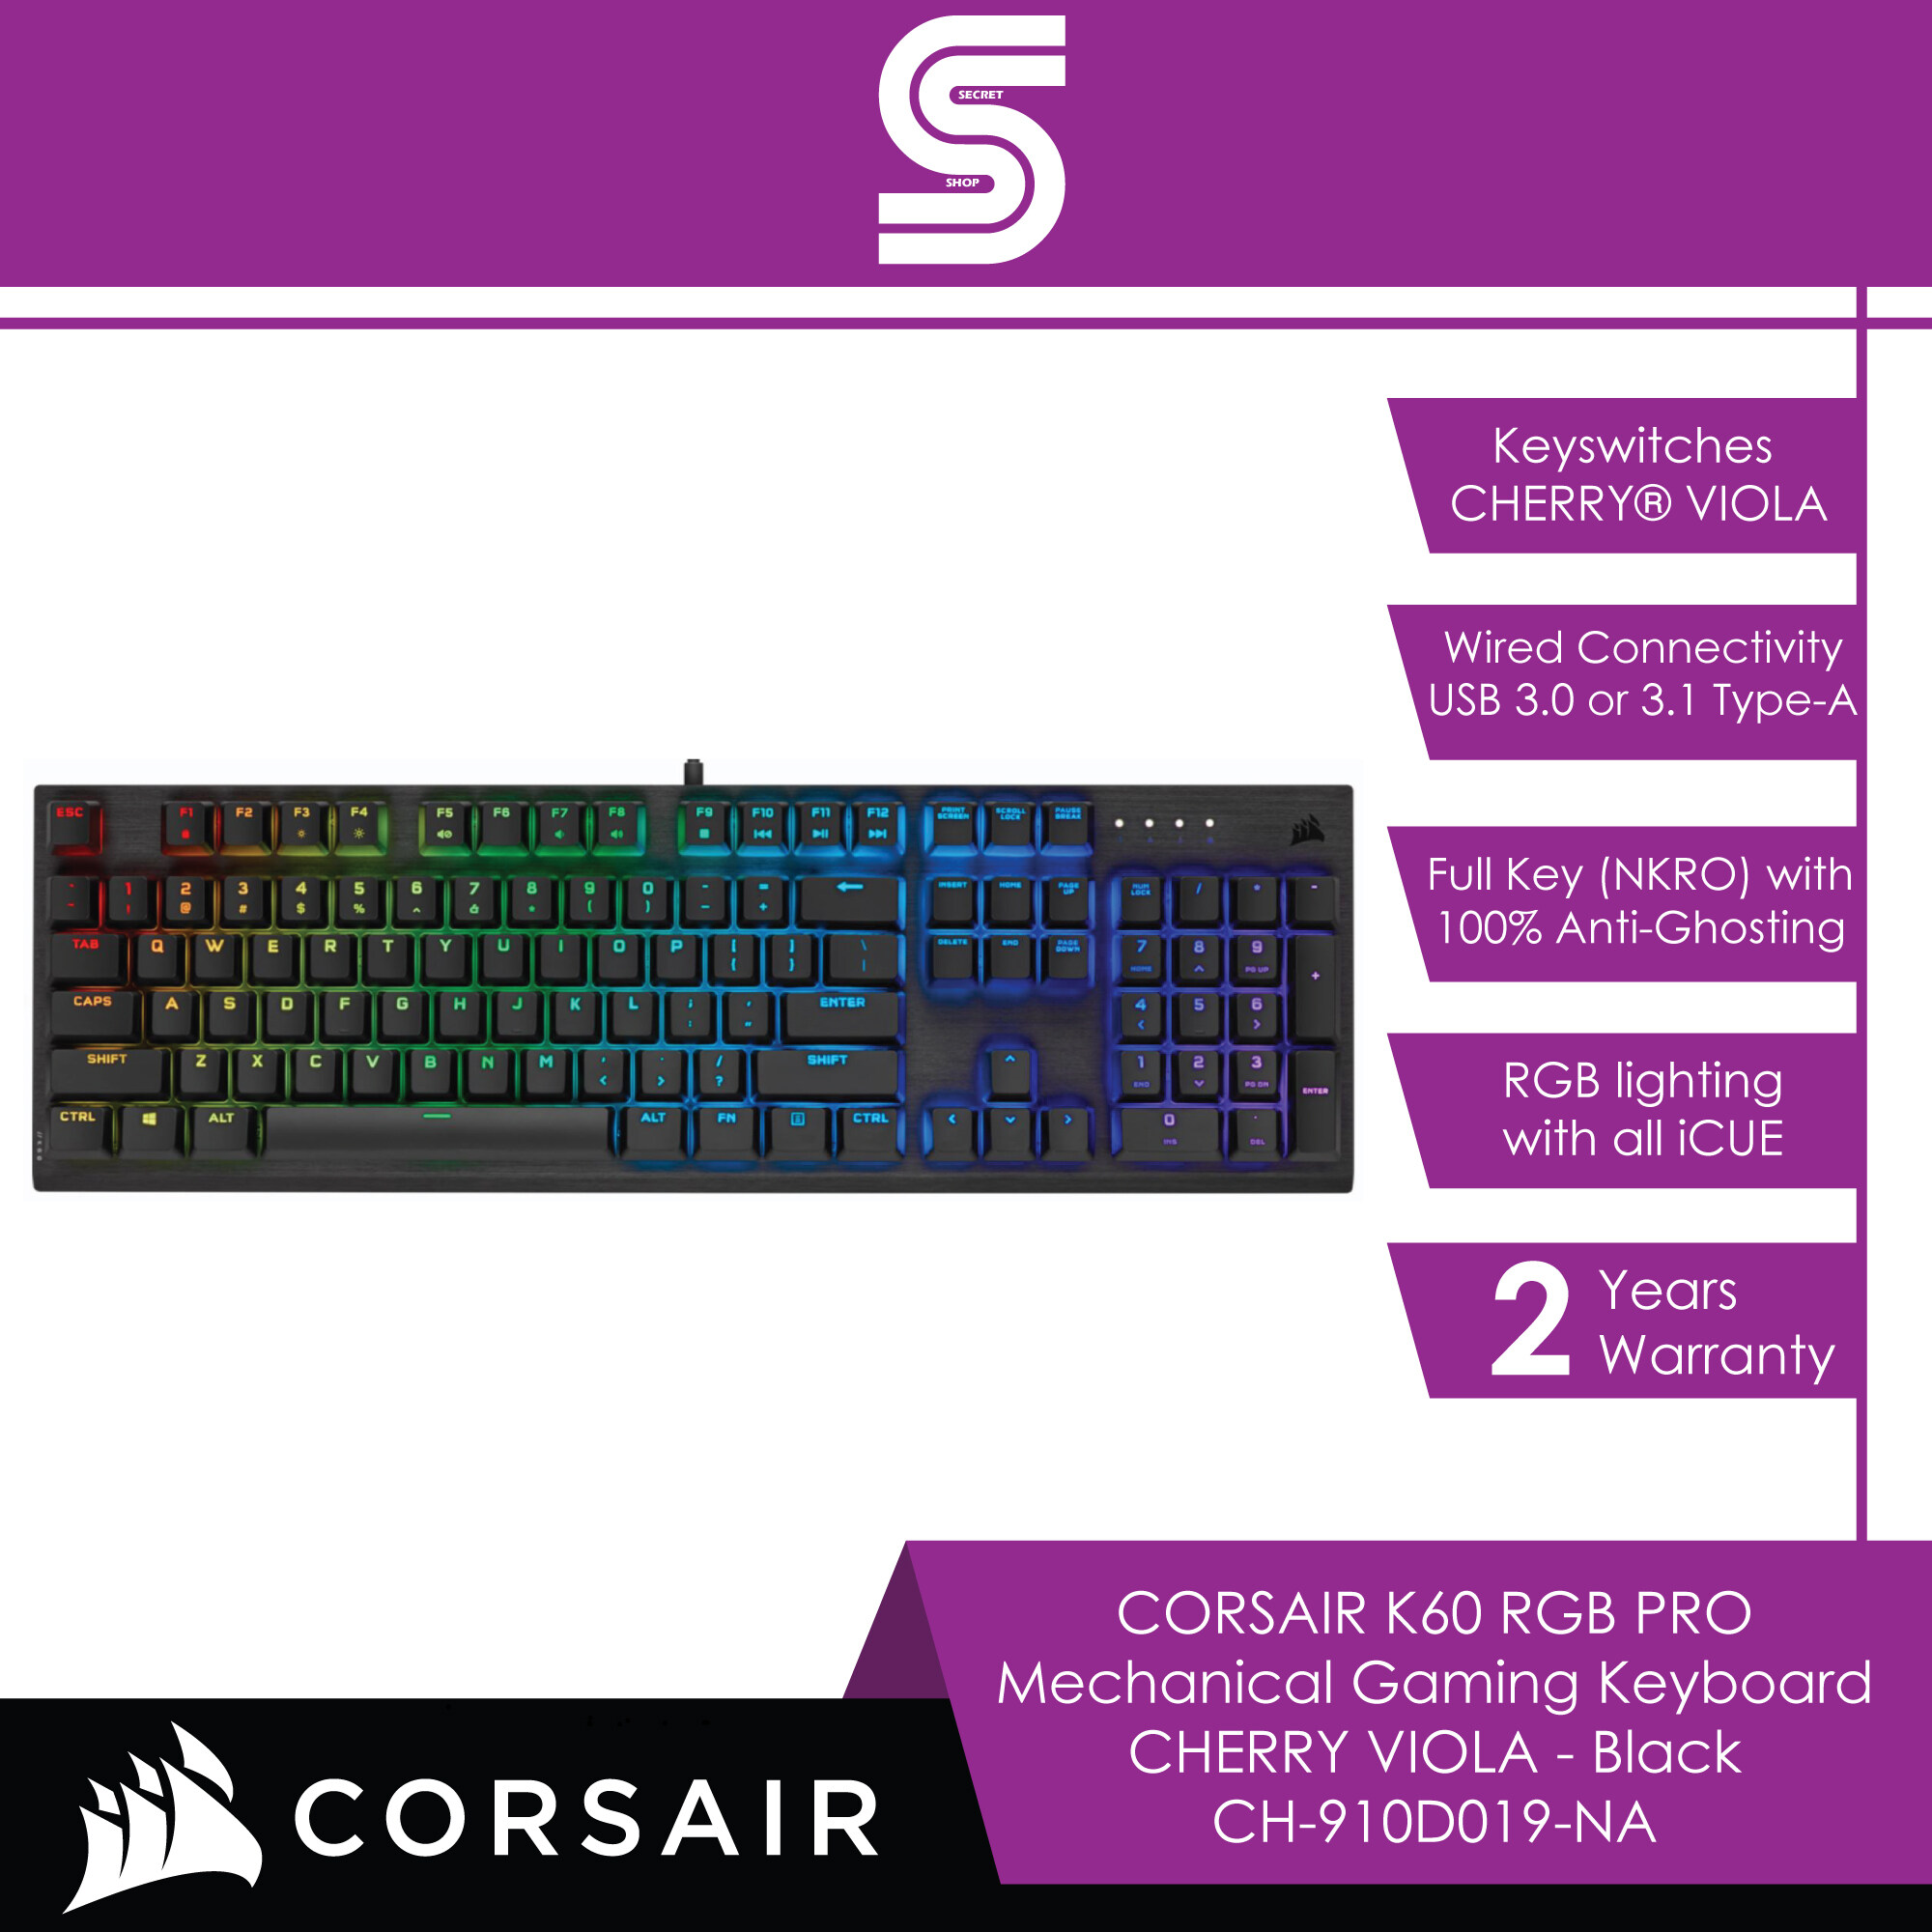 CORSAIR K60 RGB PRO Mechanical Gaming Keyboard CHERRY VIOLA - Black - CH-910D019-NA